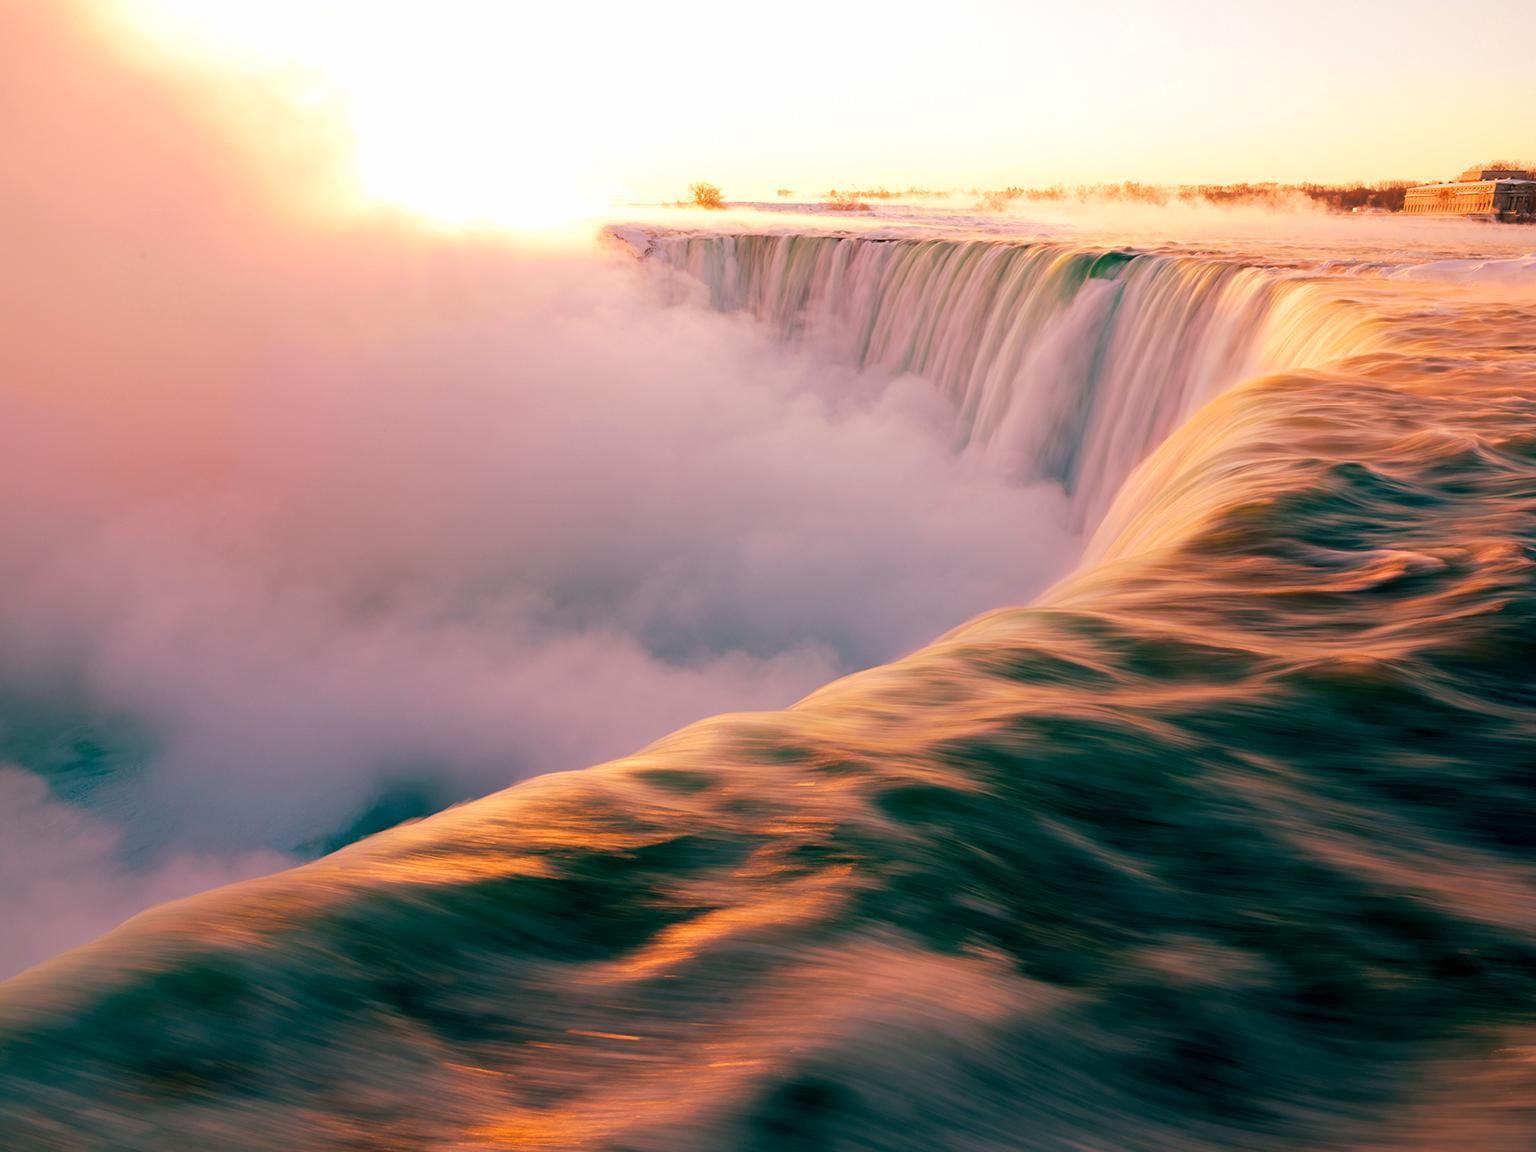  Cosmo Condina Color Photograph - Niagara Falls, Ontario, Canada . The Falls in Winter.